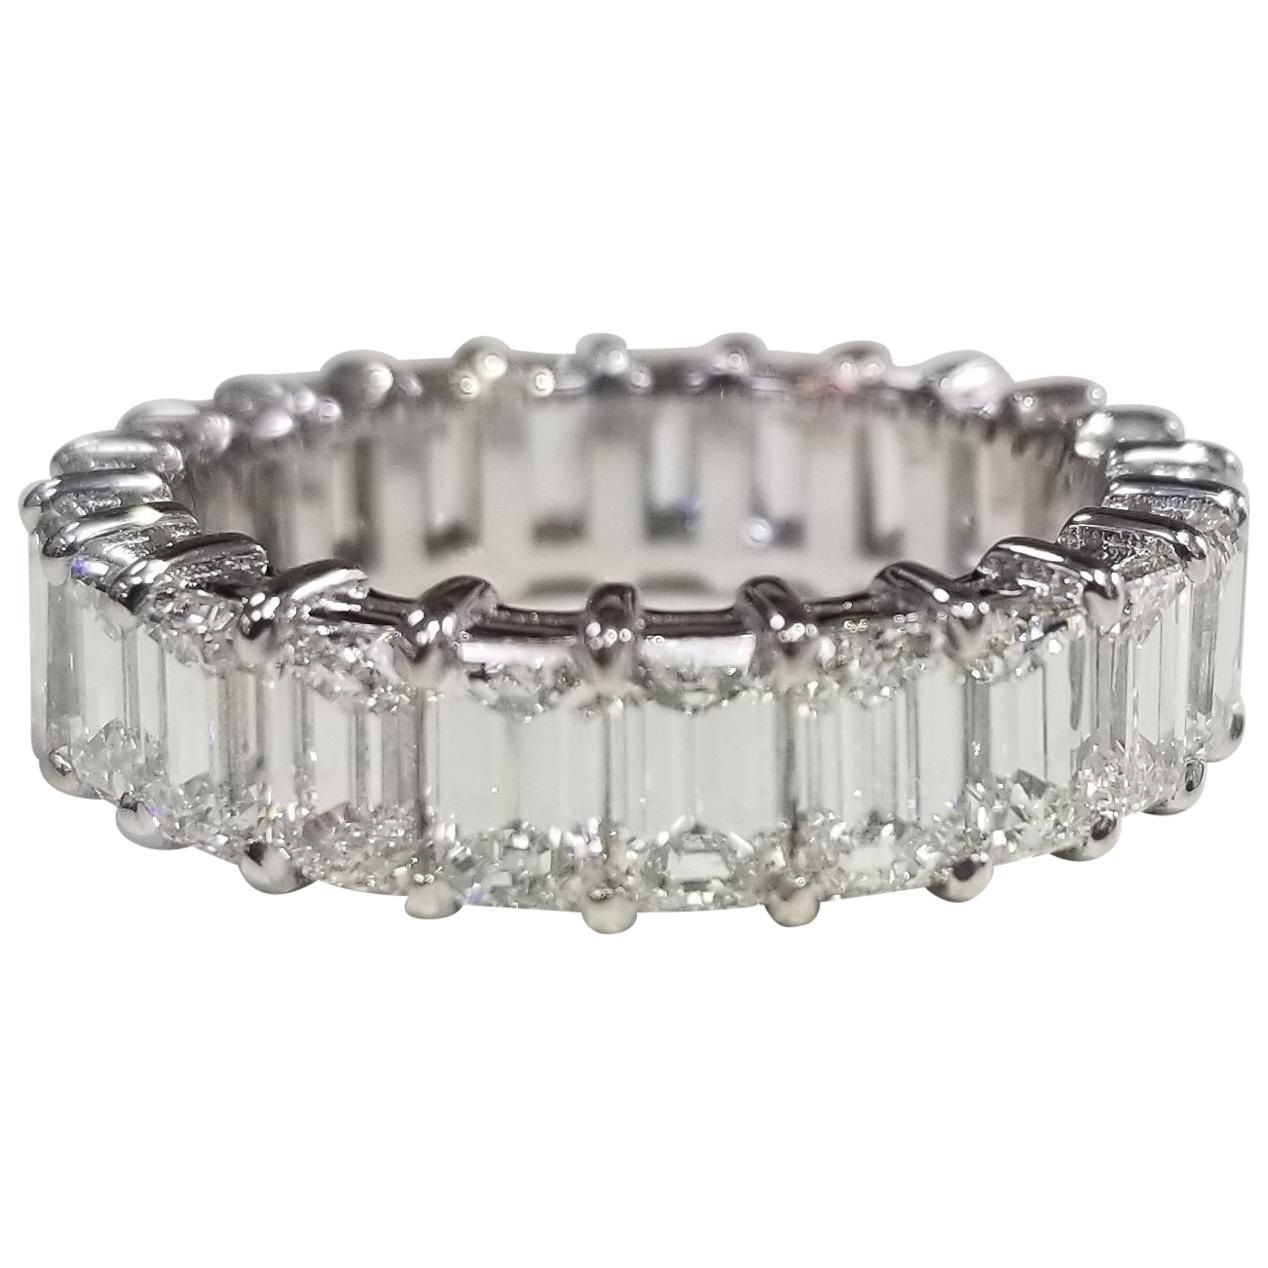 Emerald Cut Diamond Eternity Ring Set in 14 Karat White Gold Weighing 7.25 Carat